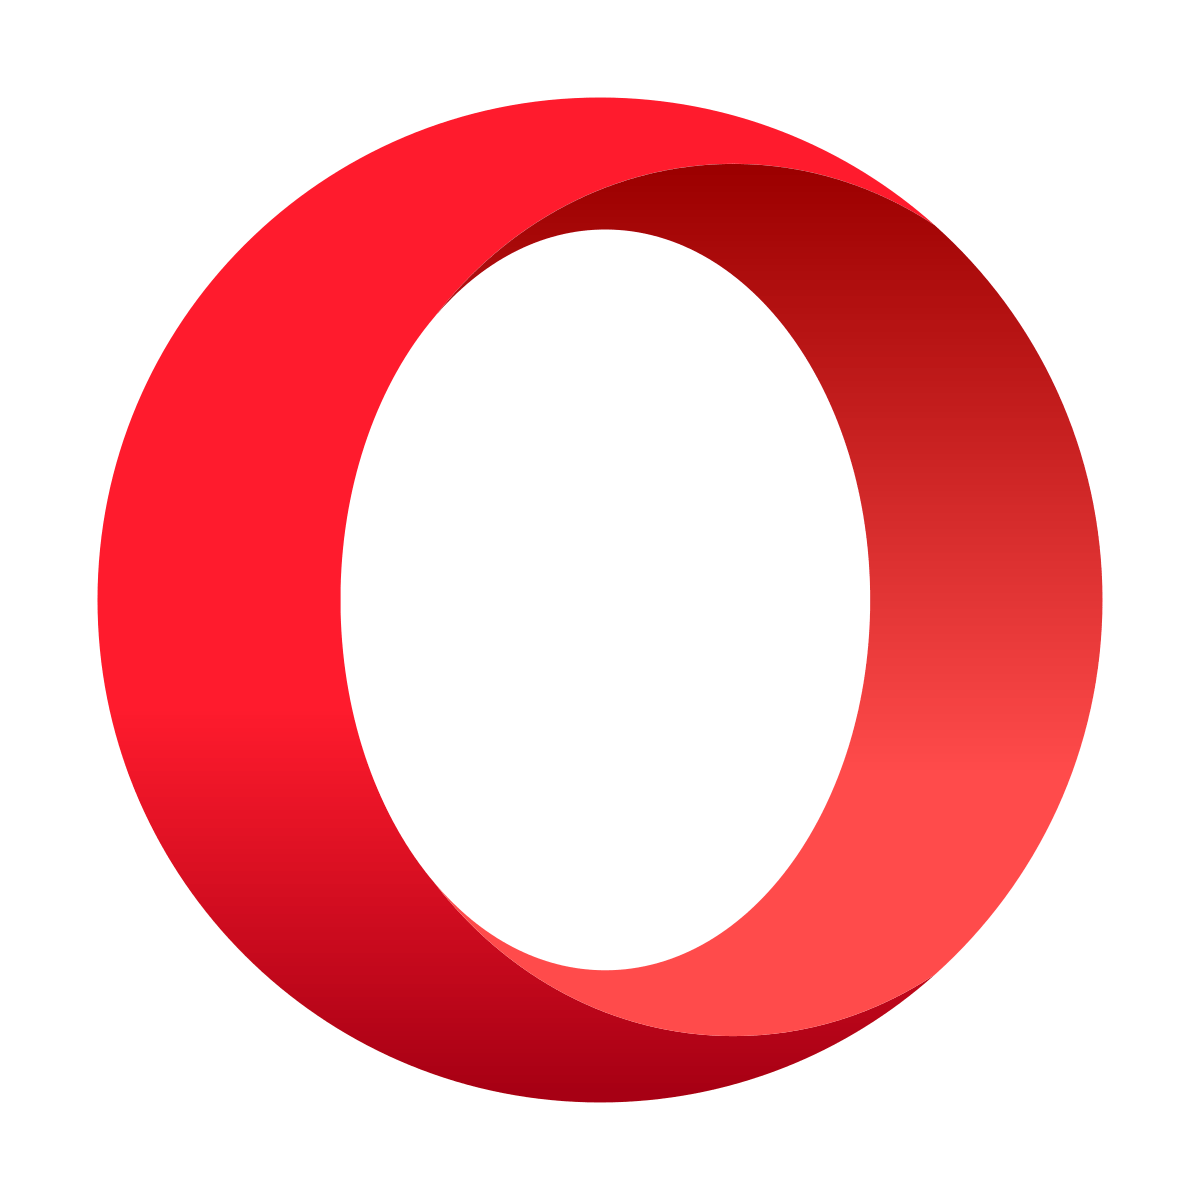 Opera Logo - Opera (web browser)